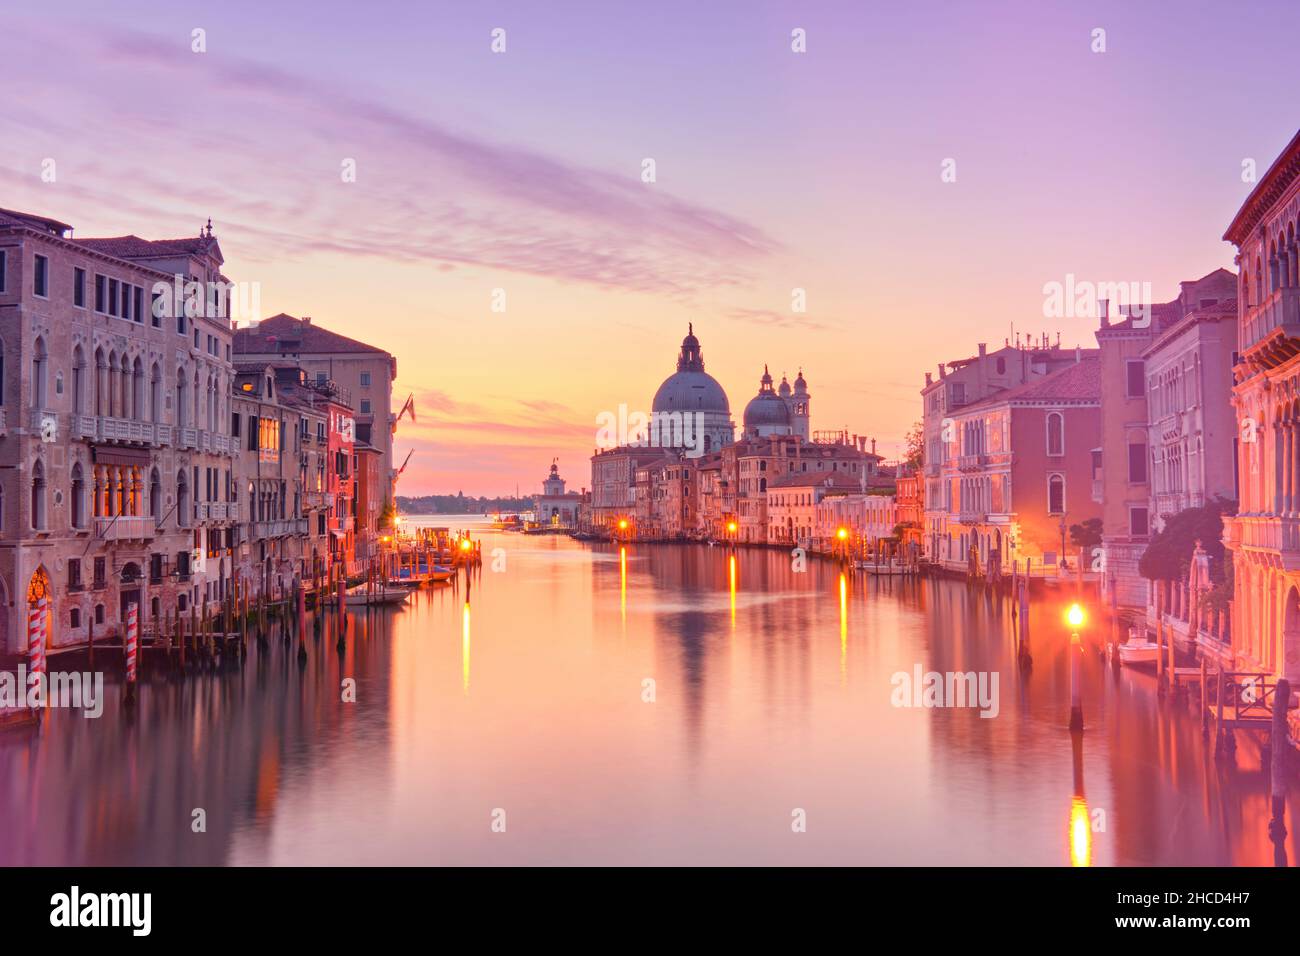 Romantic Venice at dawn, sunrise. Cityscape image of Grand Canal in Venice, with Santa Maria della Salute Basilica reflected in calm sea. Stock Photo